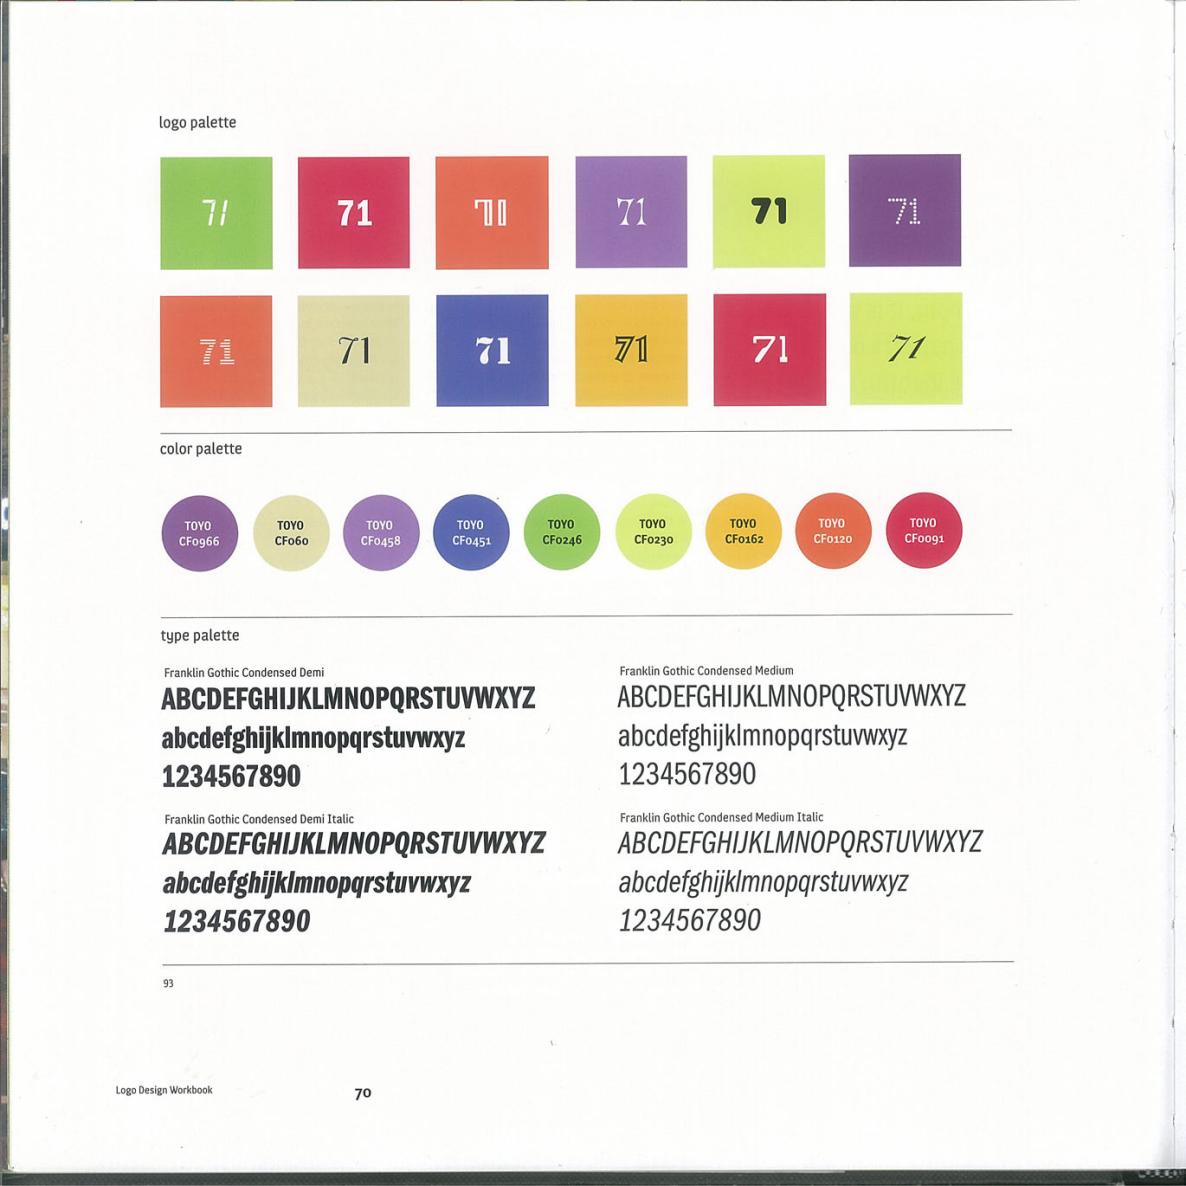 Logo Design Workbook - photo 70